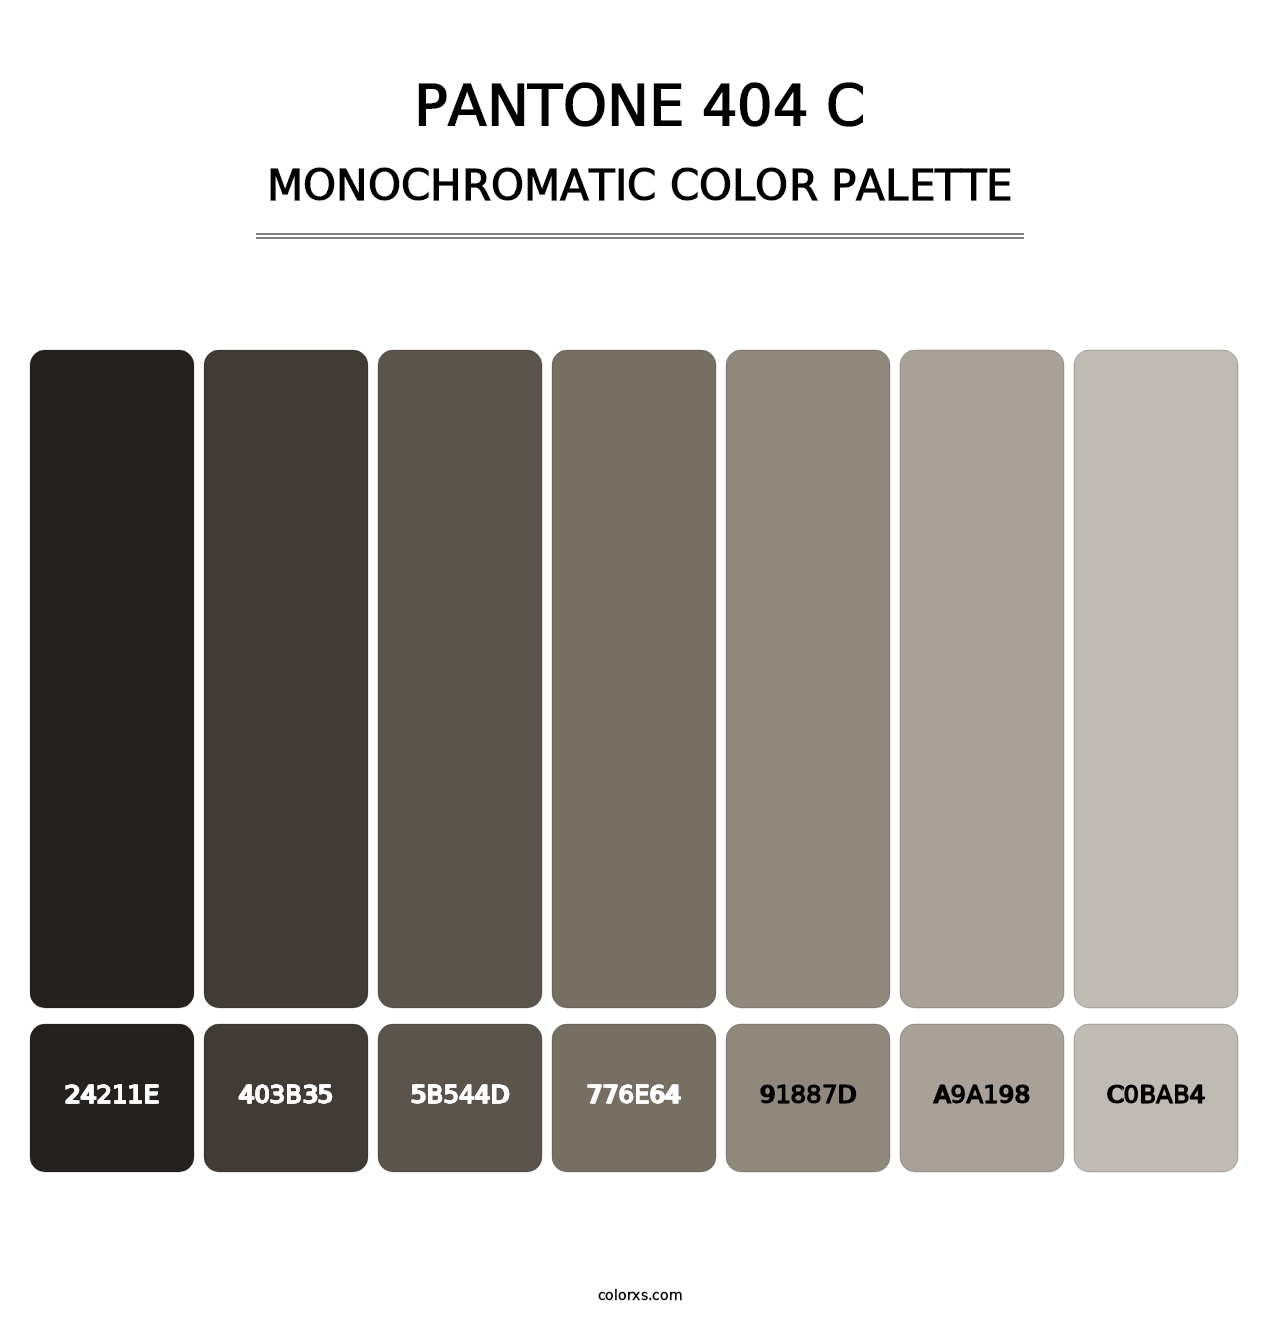 PANTONE 404 C - Monochromatic Color Palette